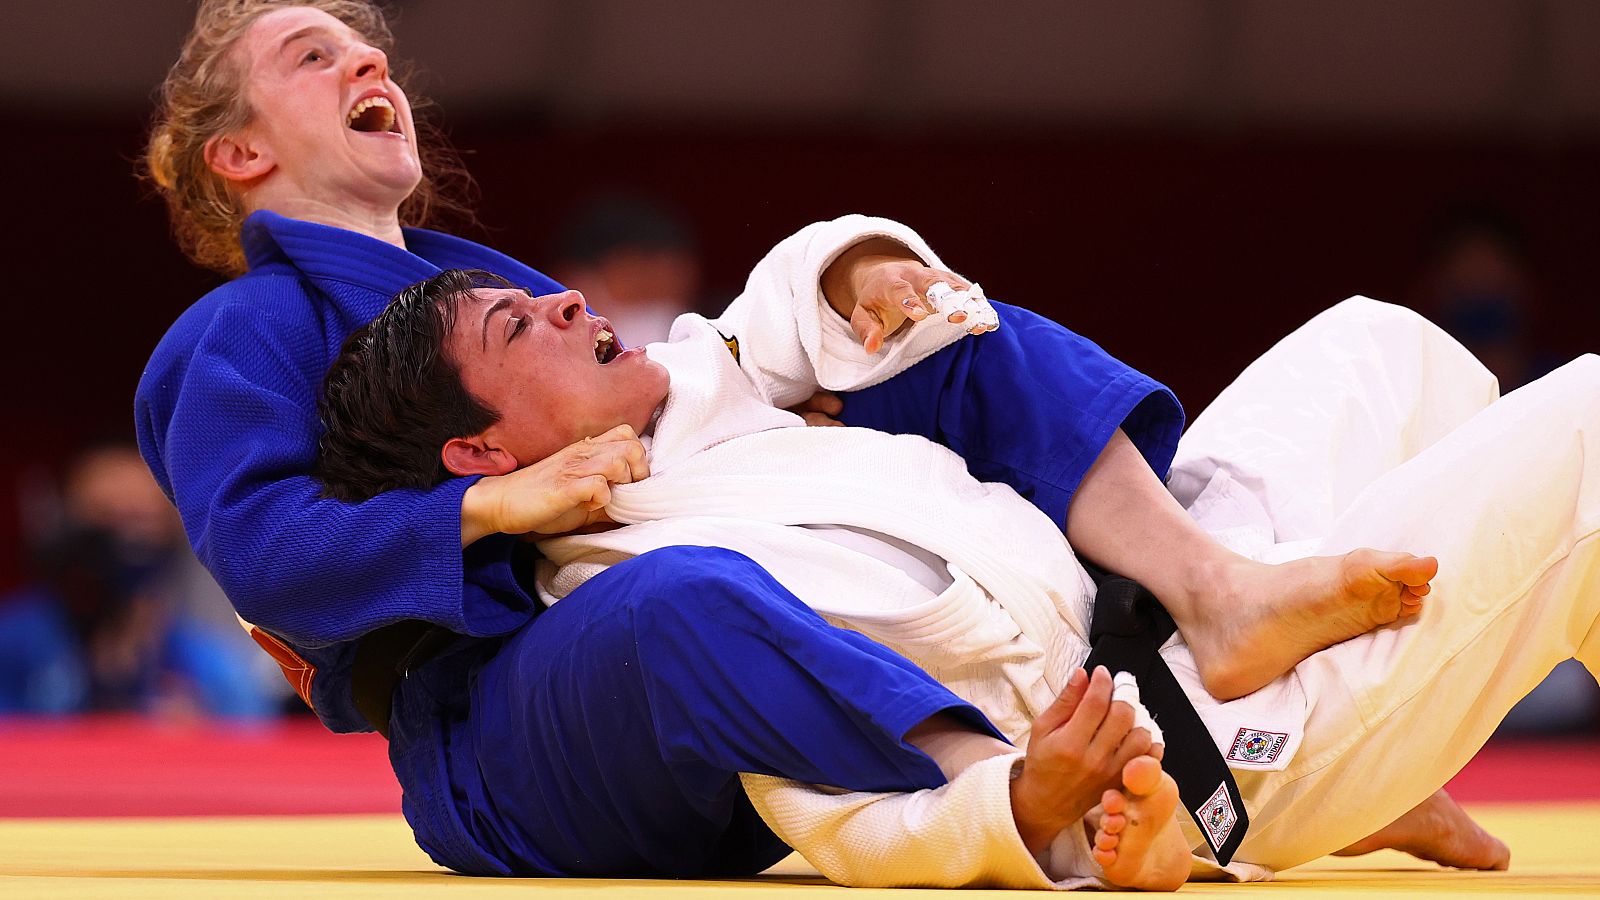 Disfruta de las competiciones de Judo en los Juegos Olímpicos de Tokio 2020. Retransmisiones, resultados y resúmenes en RTVE Play.